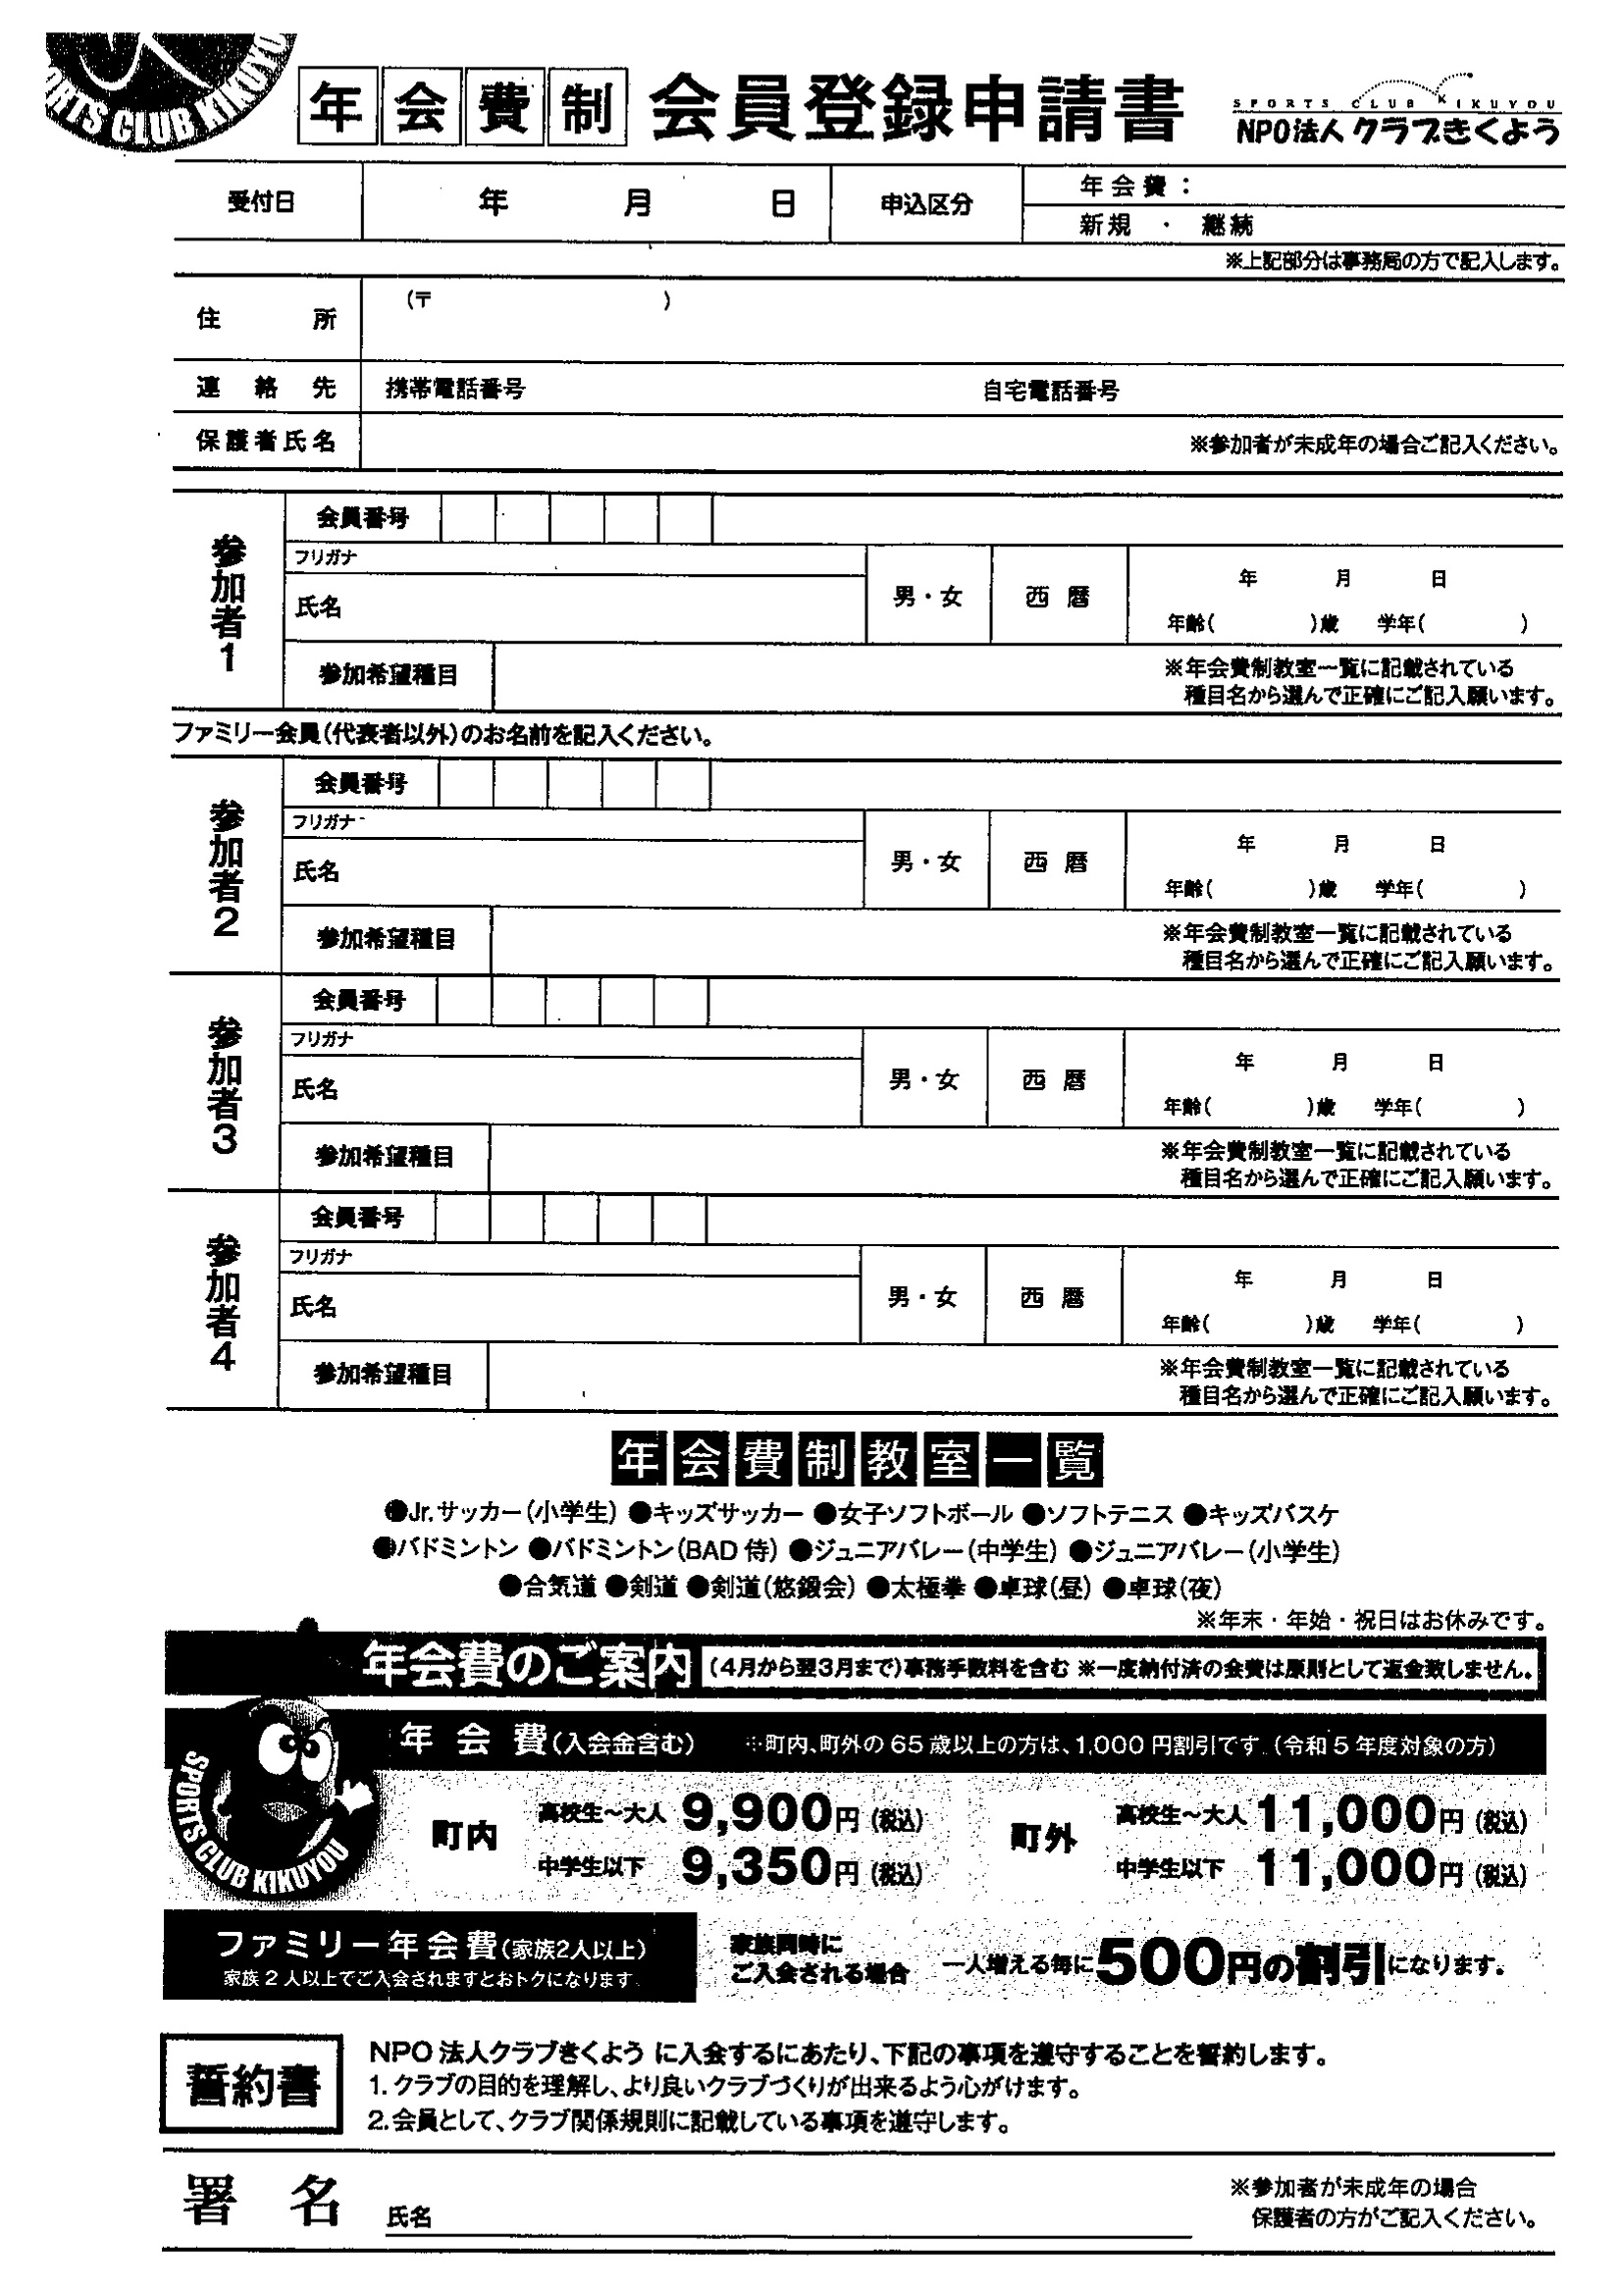 スポーツクラブ登録申請書(年会費制)